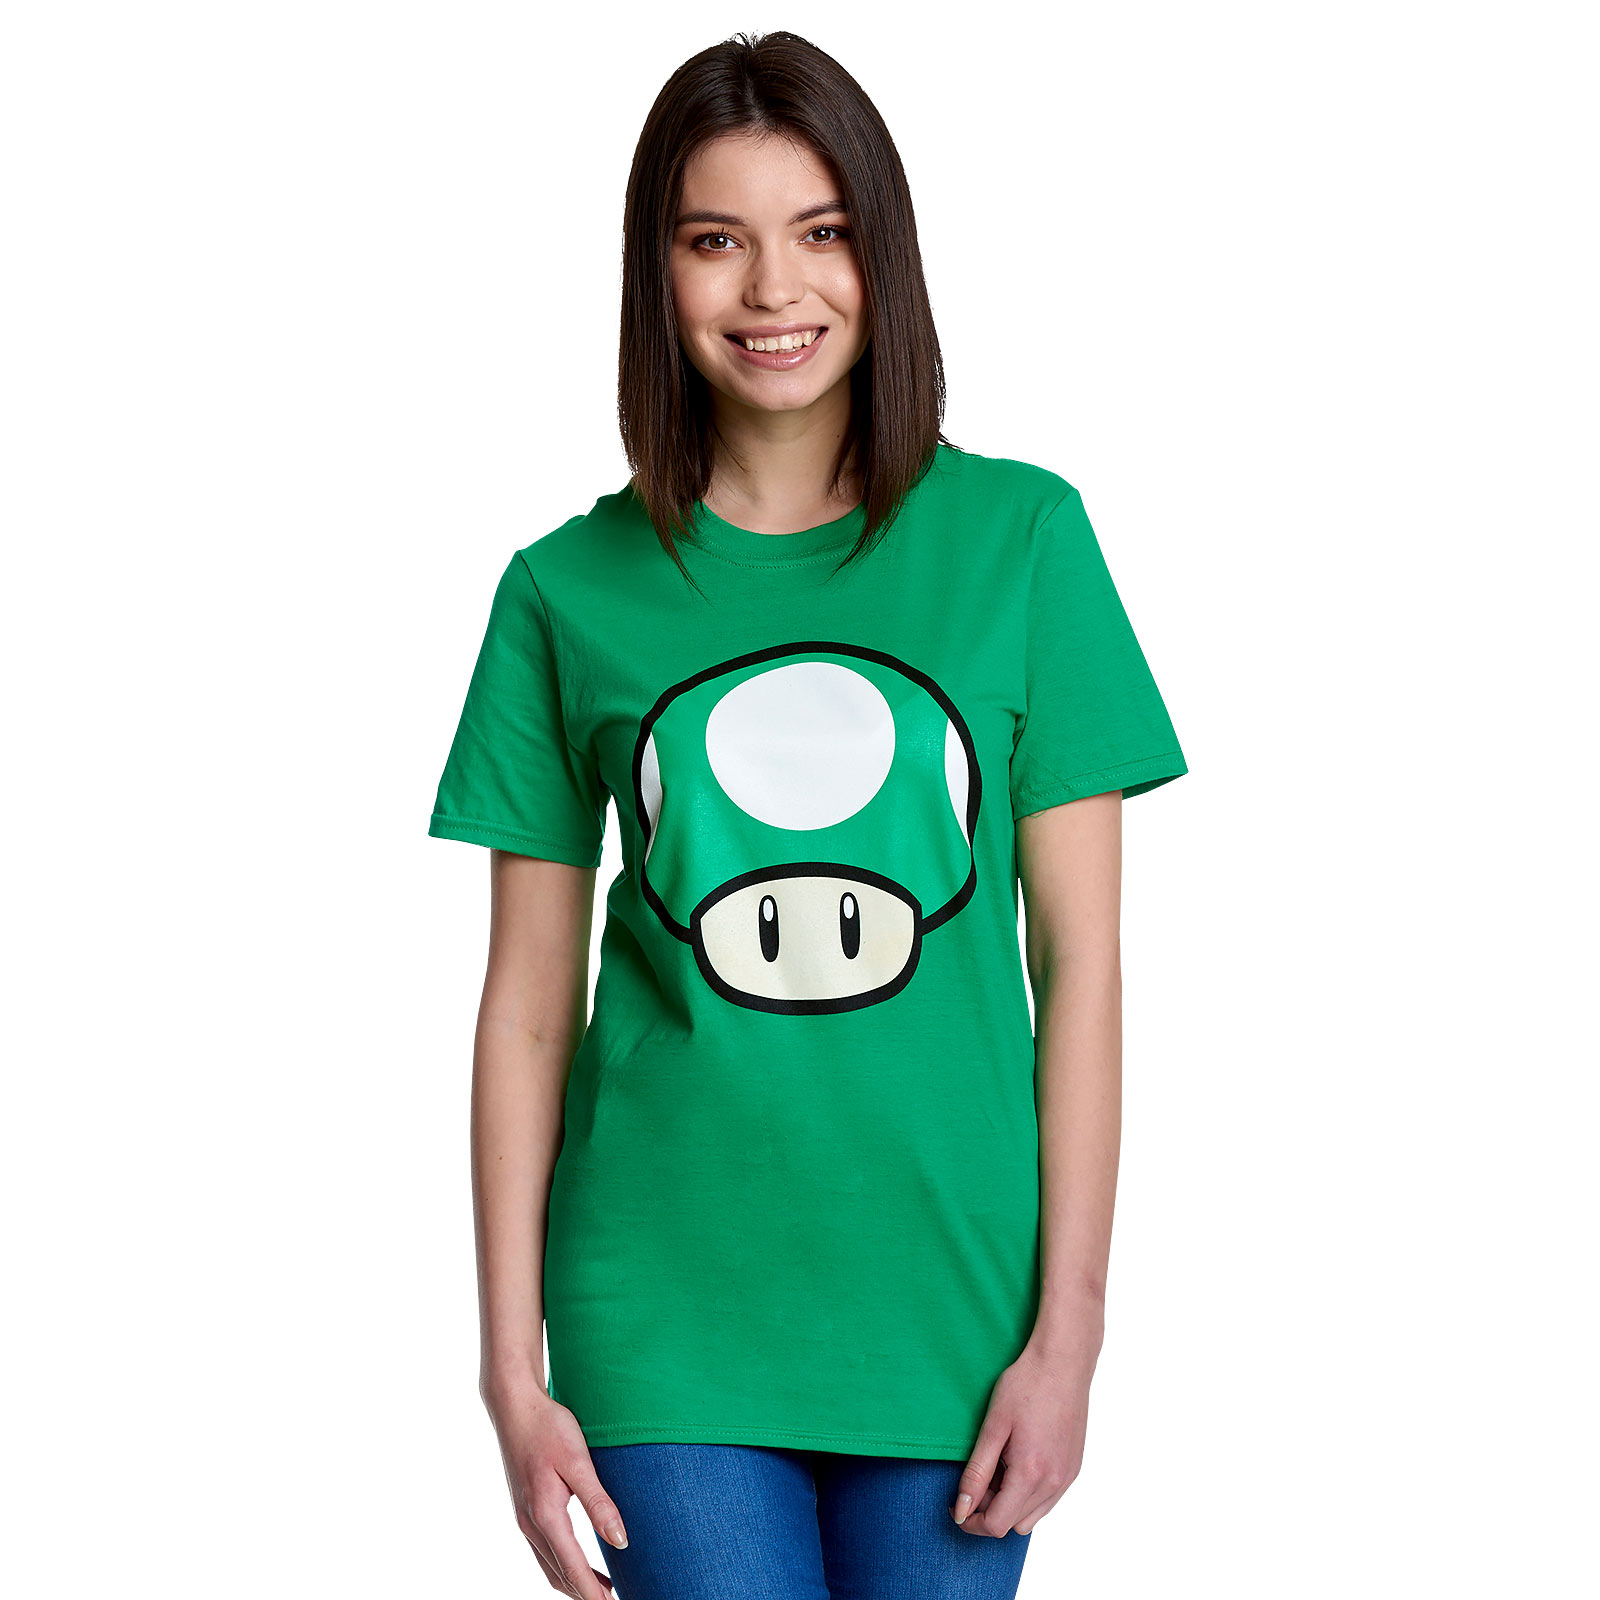 Super Mario - 1 UP Paddenstoel T-Shirt groen